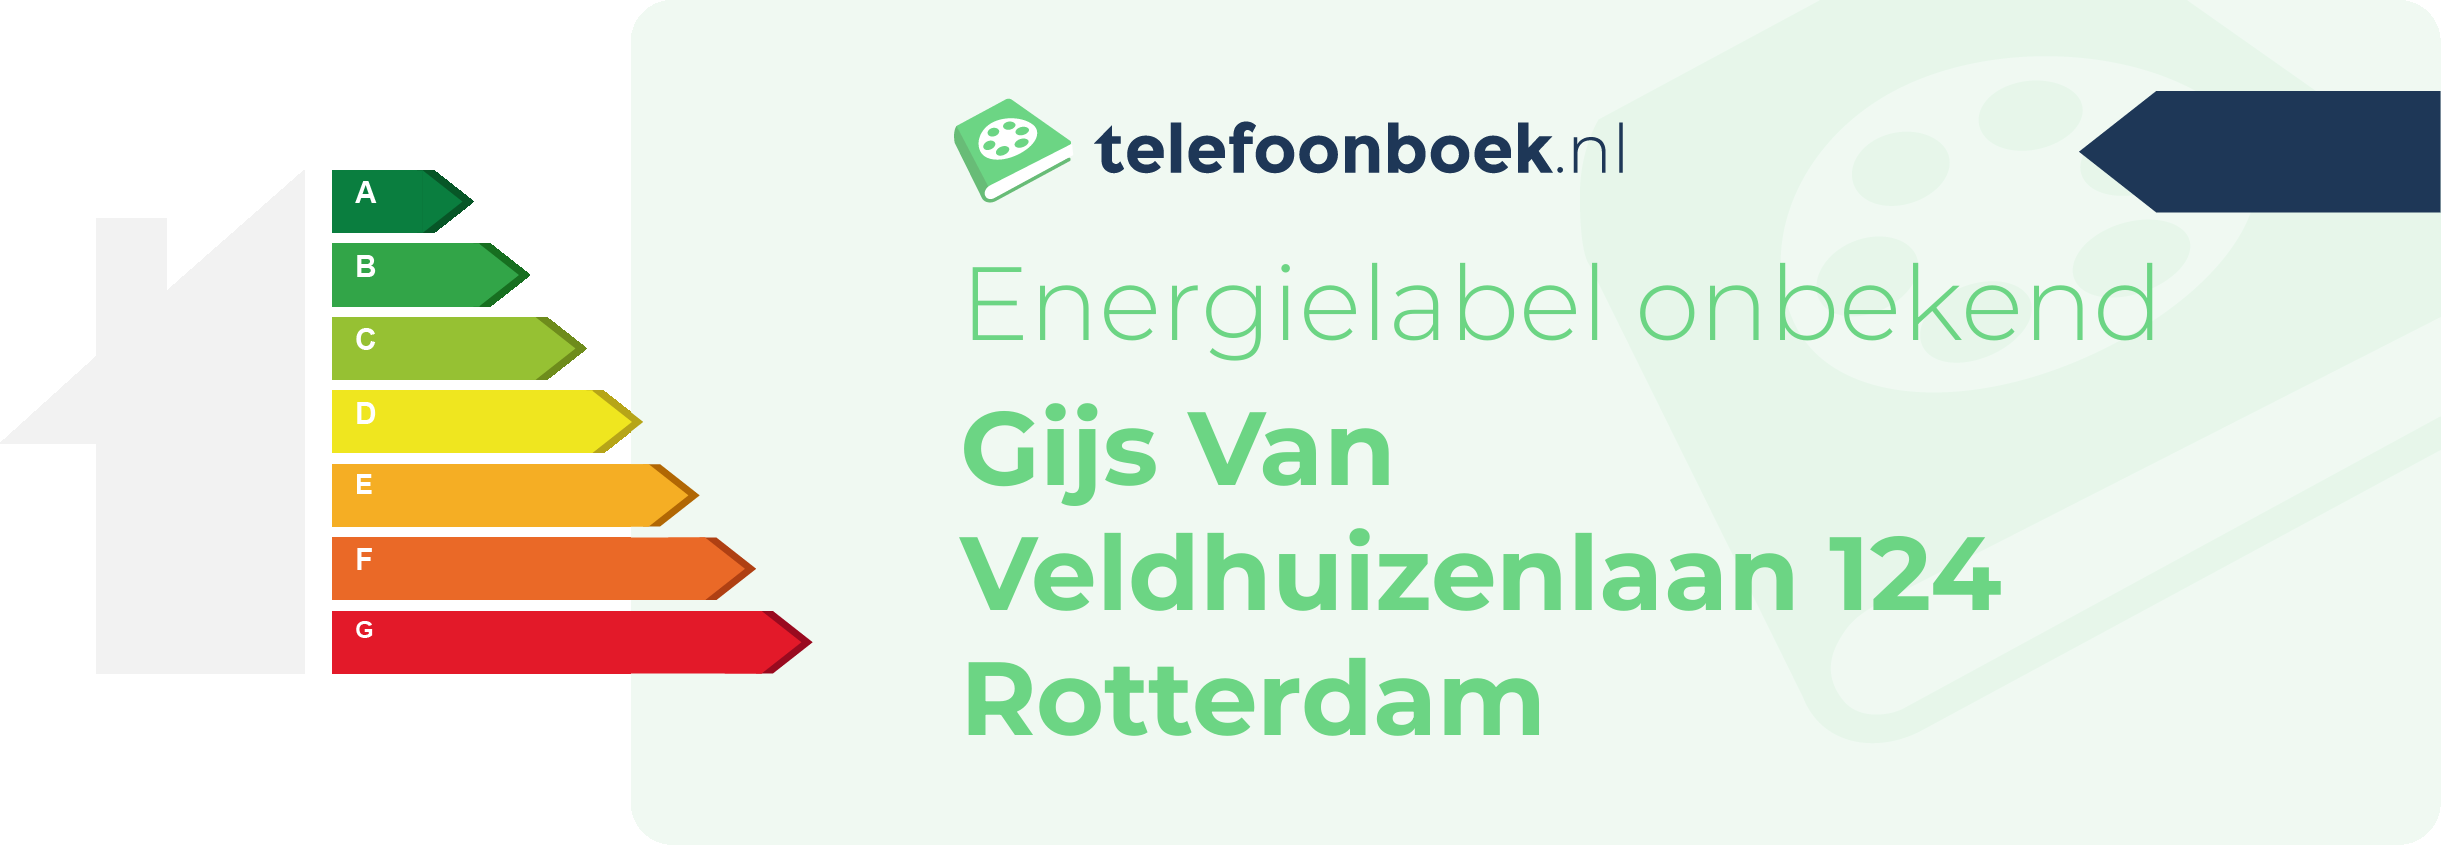 Energielabel Gijs Van Veldhuizenlaan 124 Rotterdam